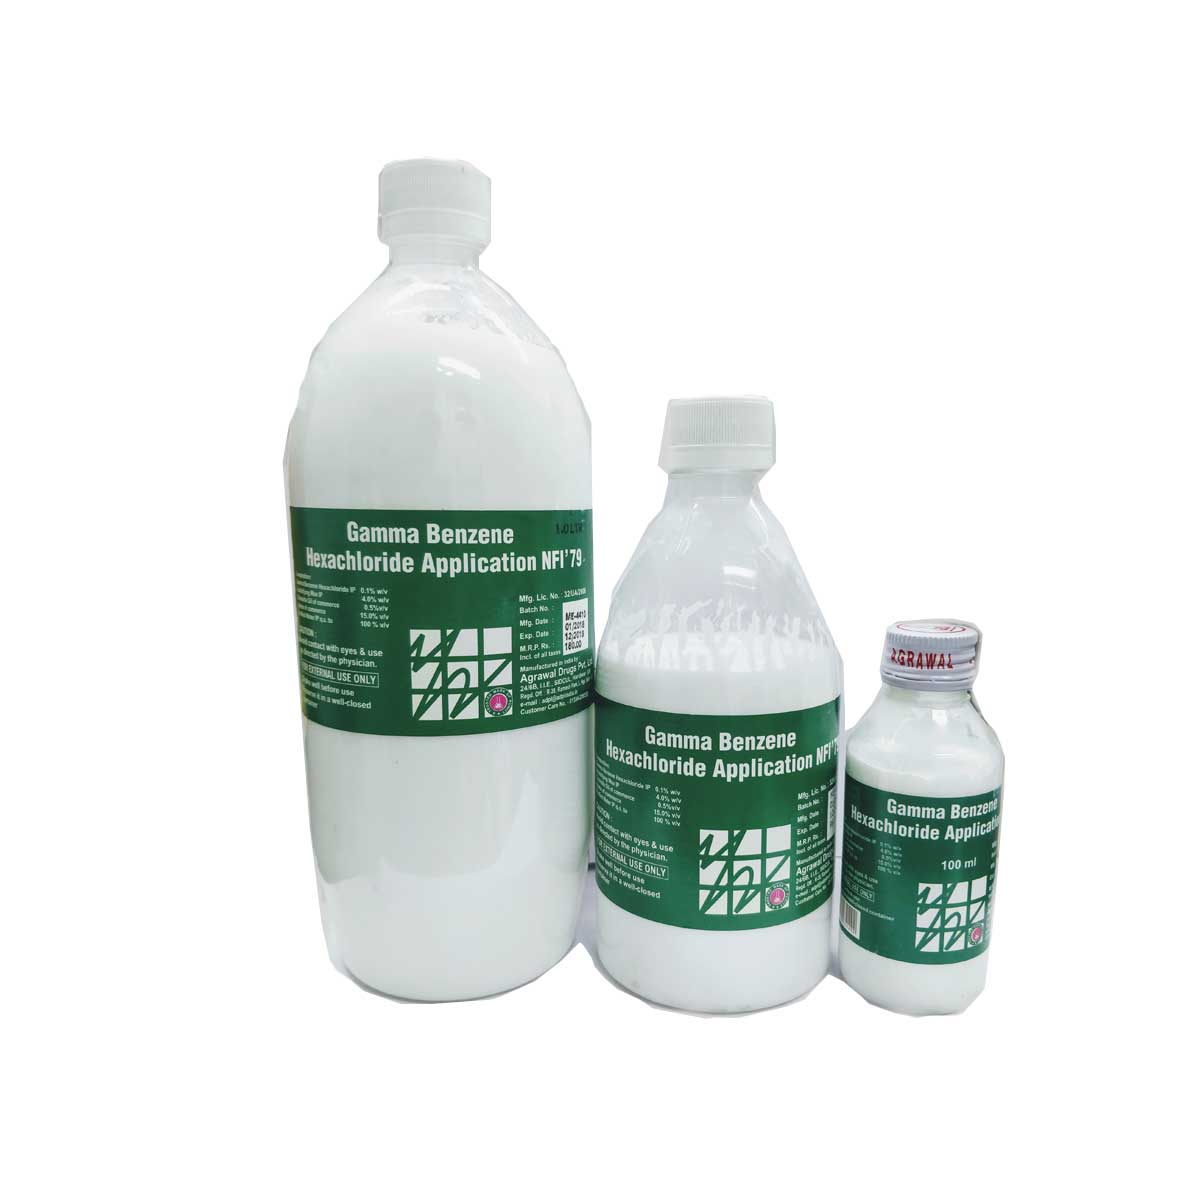 Gamma Benzene Hexachloride Application NFI’79